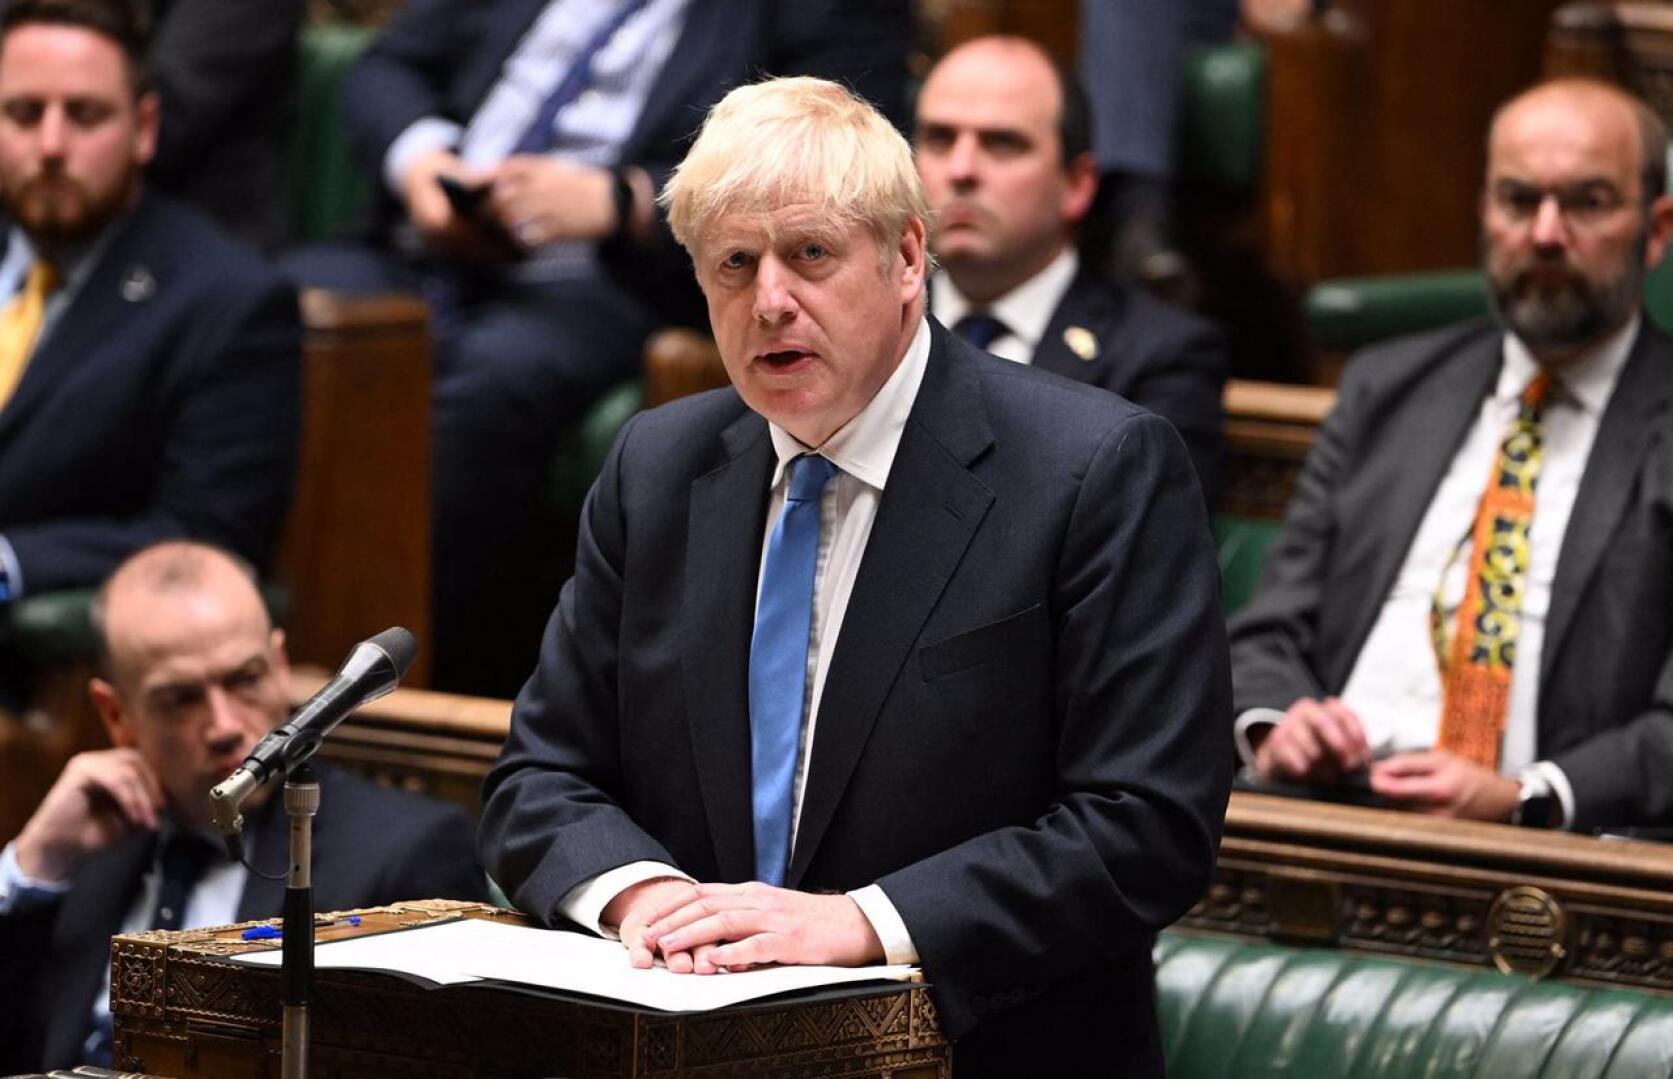 Britannian pääministeri Boris Johnson eroaa, kertovat brittiläiset medialähteet.